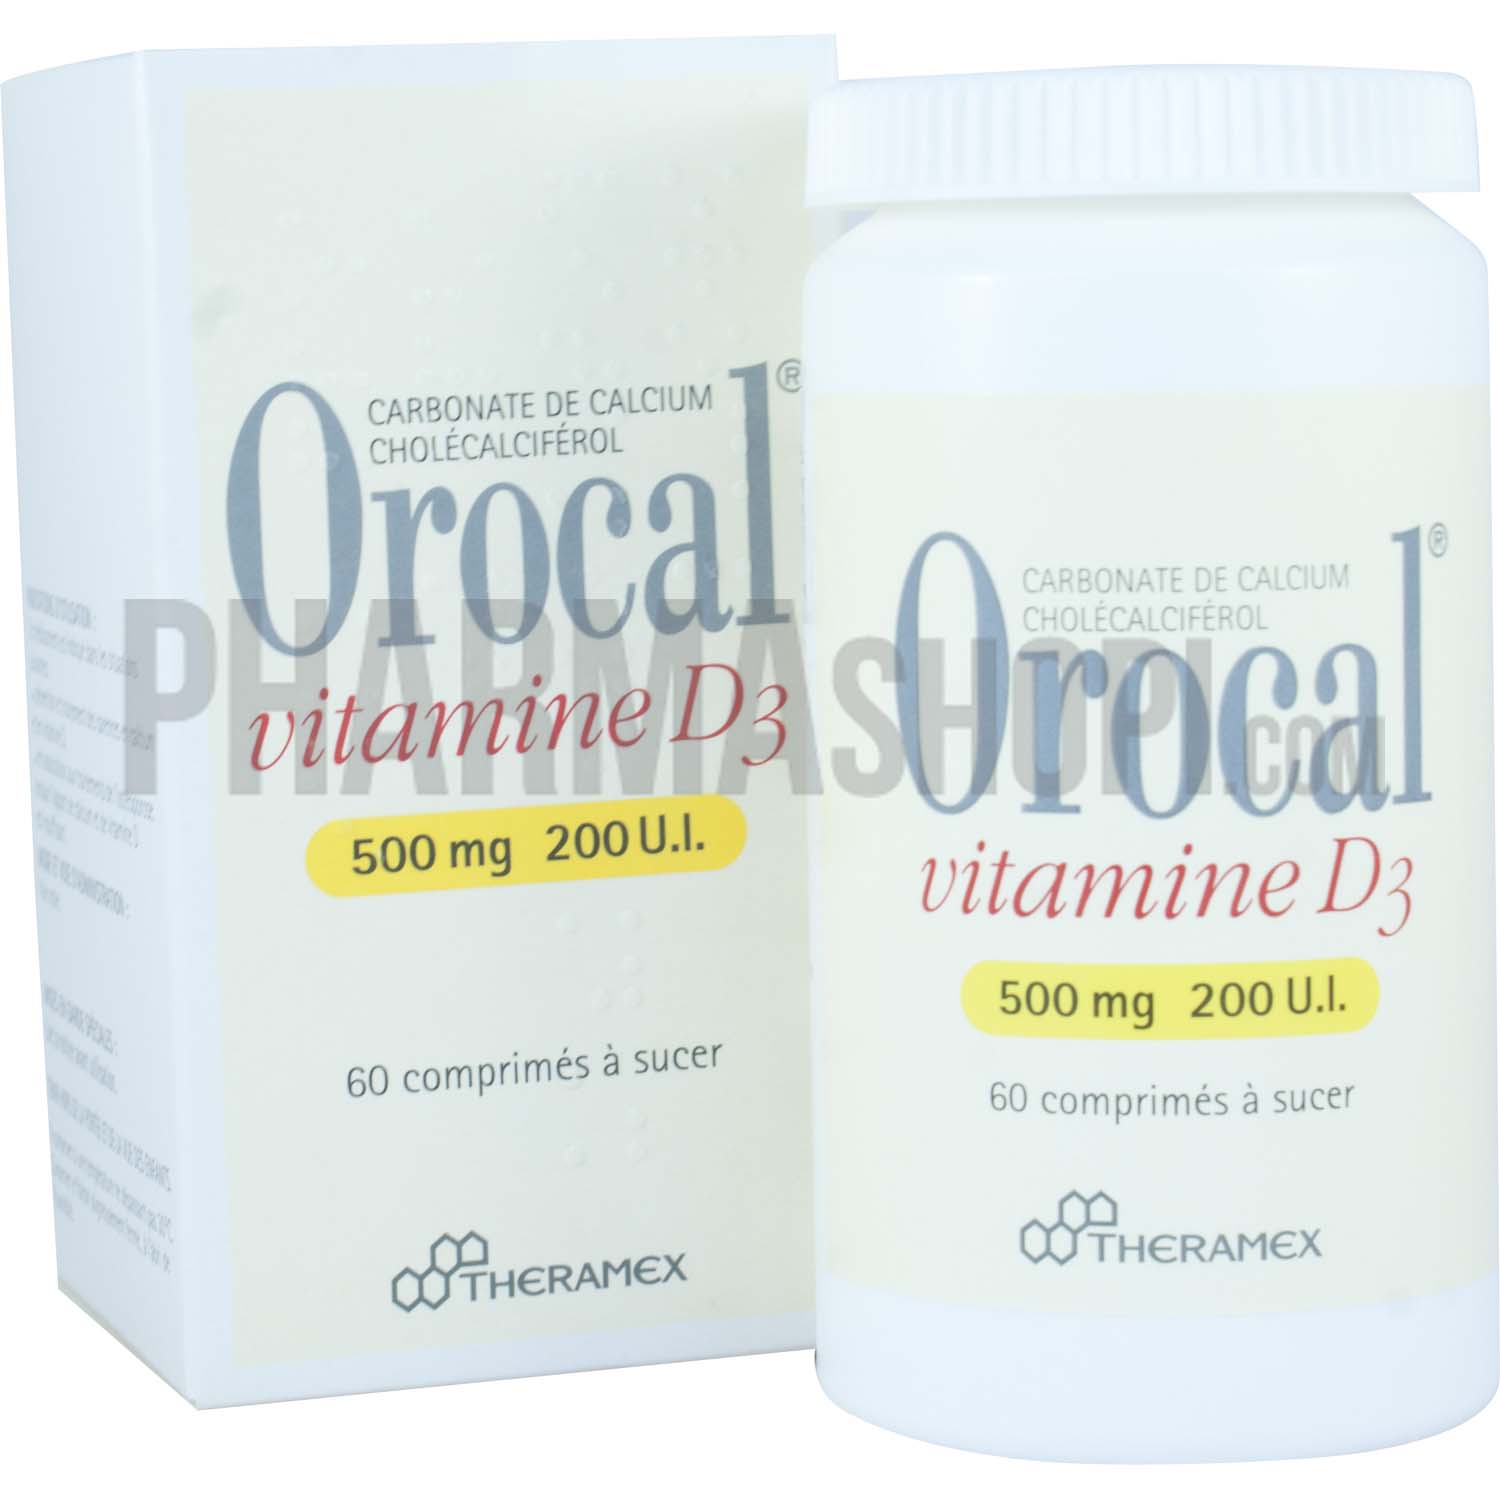 Orocal Vitamine D3 500mg/200 U.I - 60 comprimés à sucer